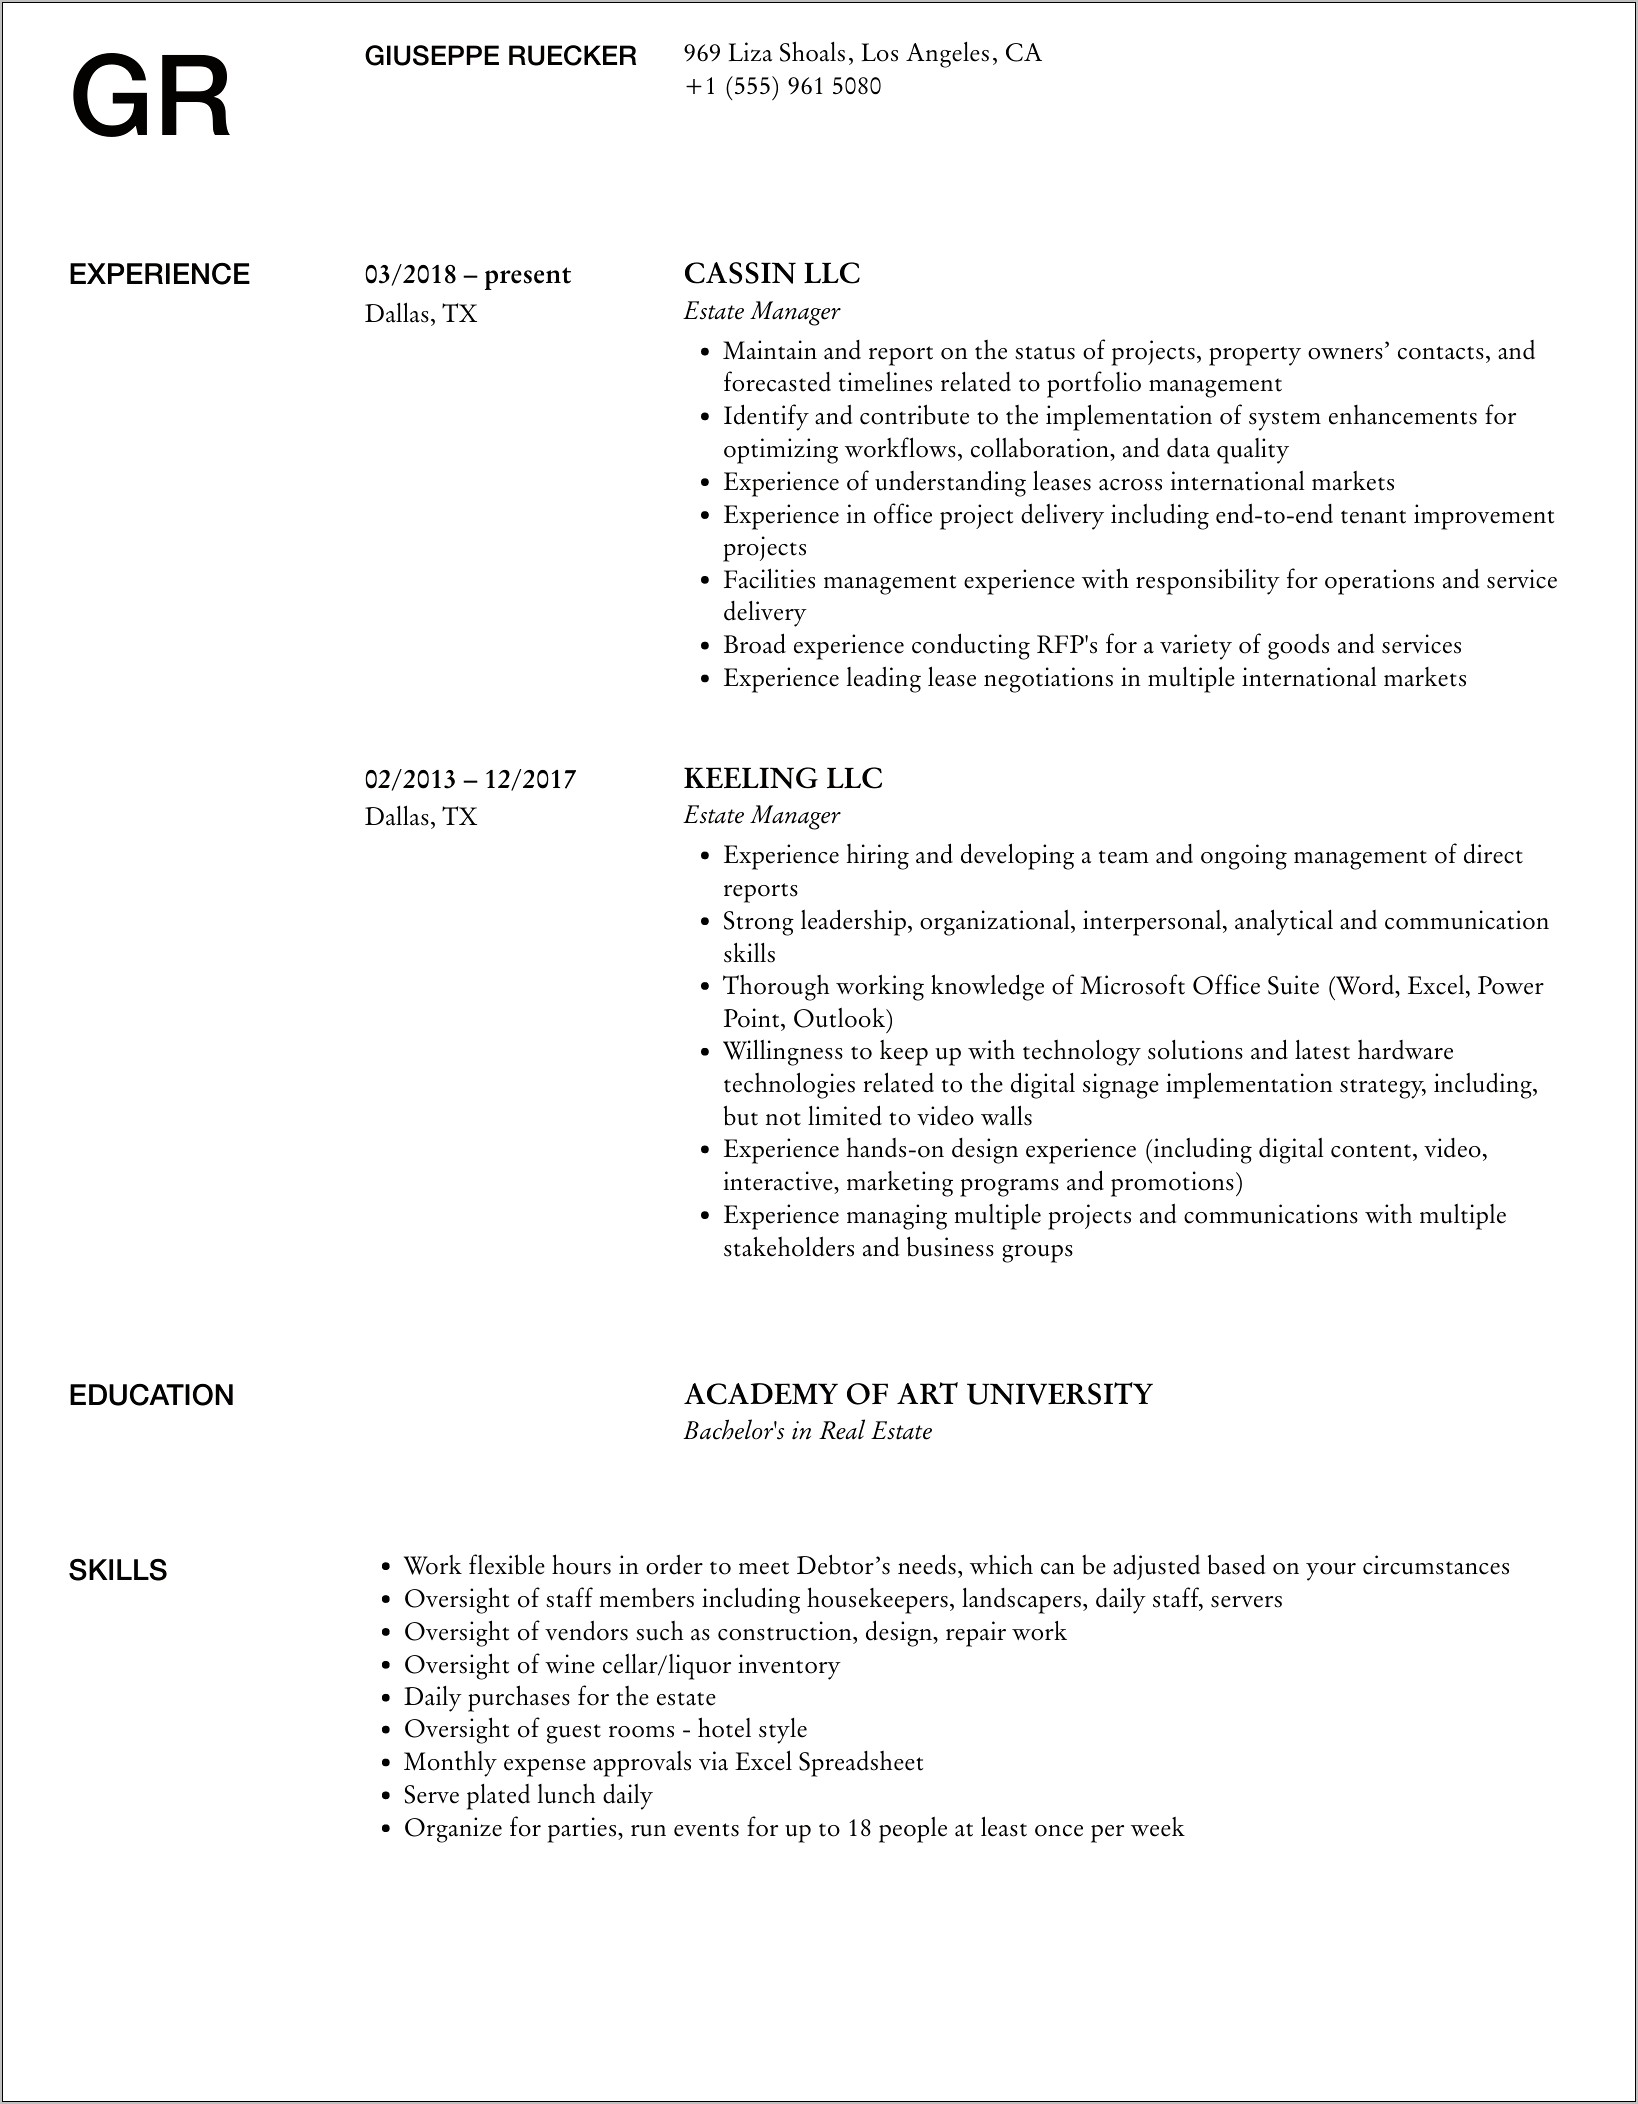 Estate Manager Job Description Resume